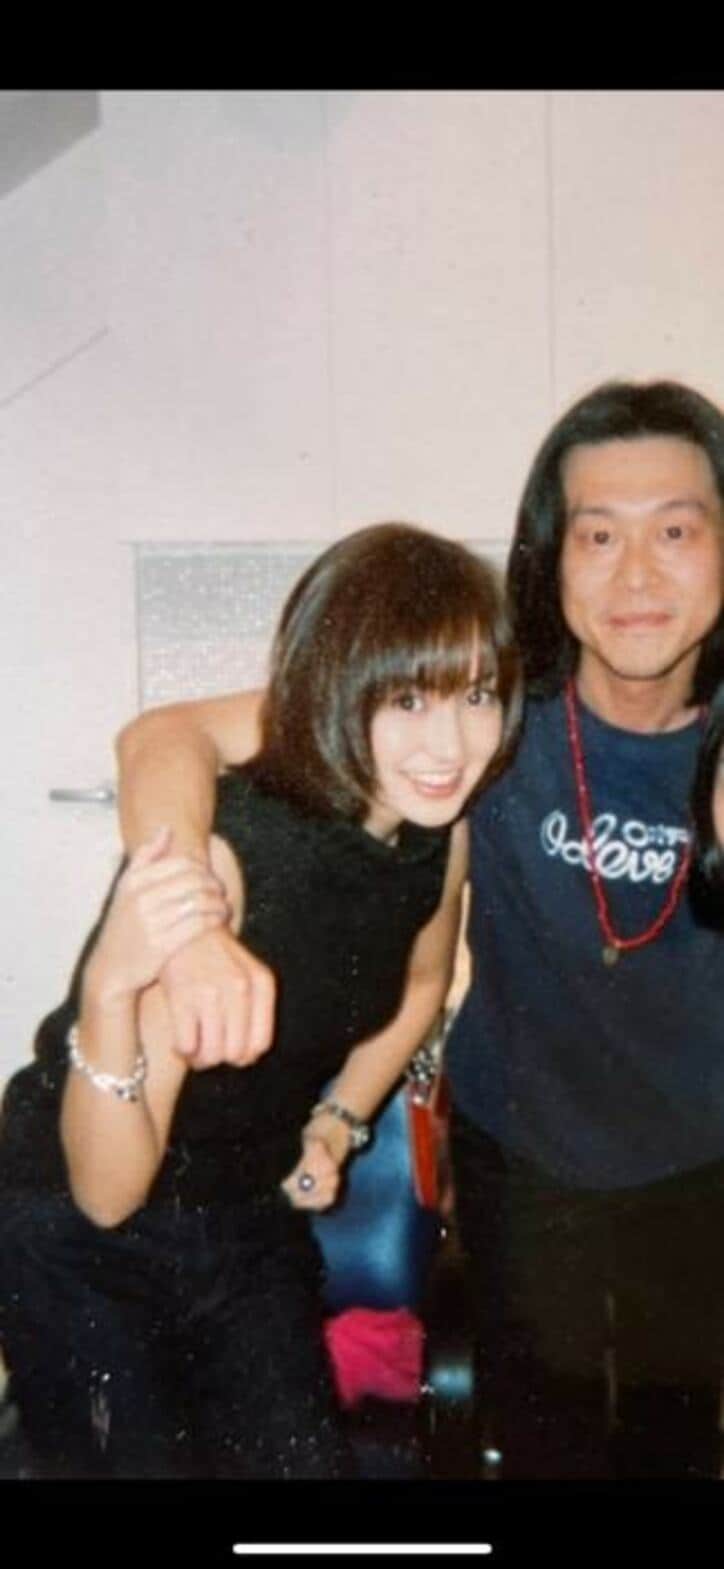  矢田亜希子、1999年に撮影したショートカット姿を公開「私、19歳か20歳」 